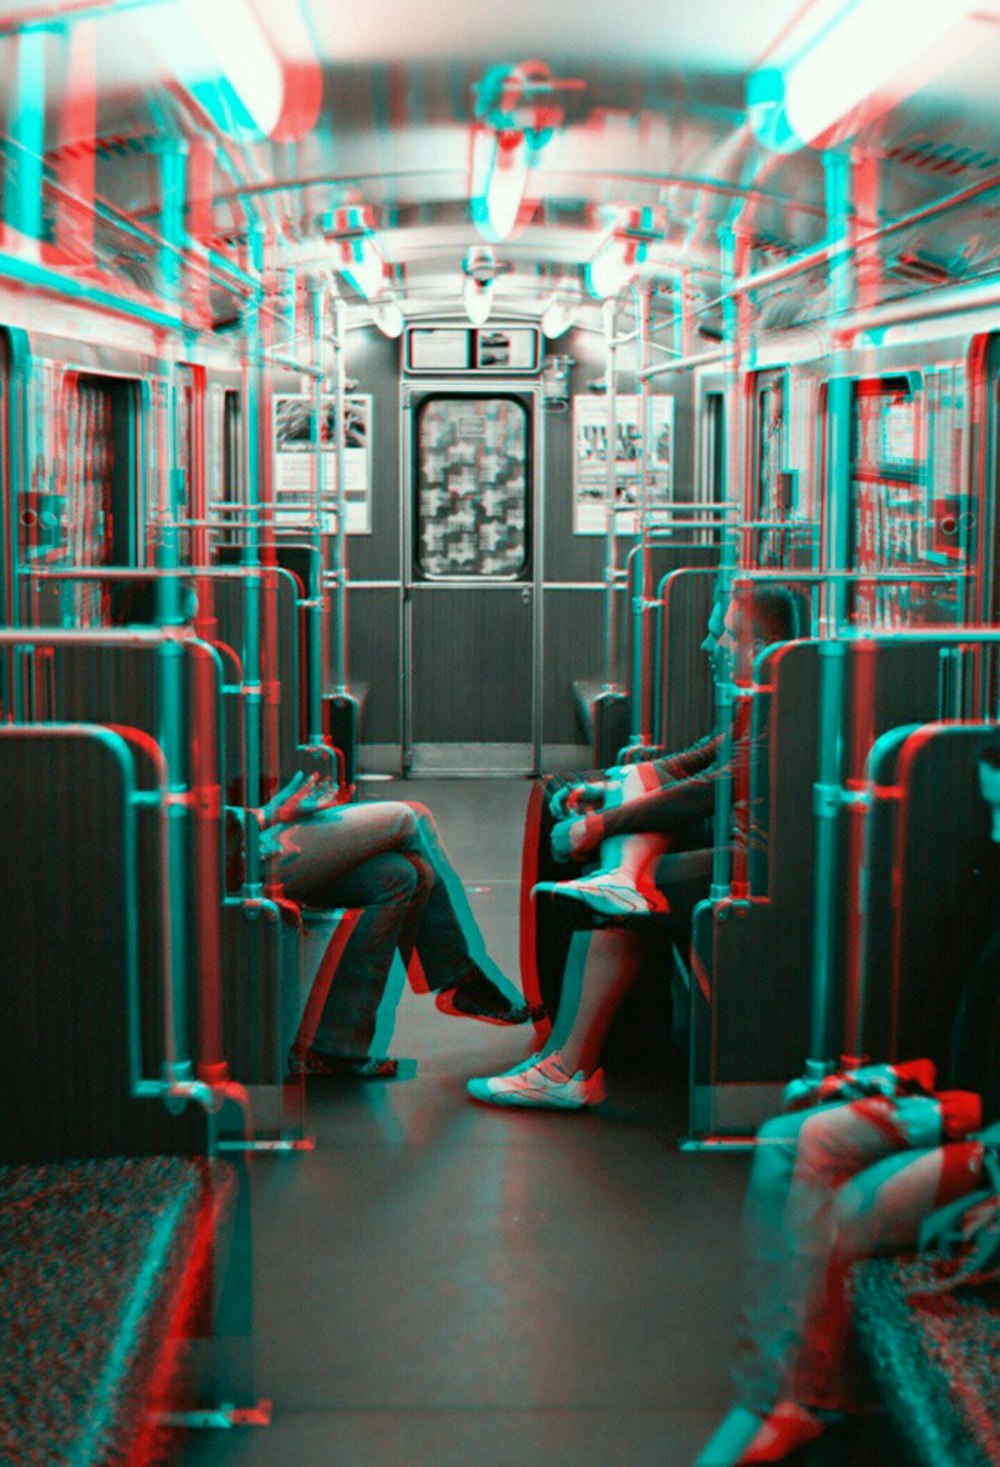 Foto in scala di grigi di due persone una di fronte all'altra mentre sono sedute all'interno del treno